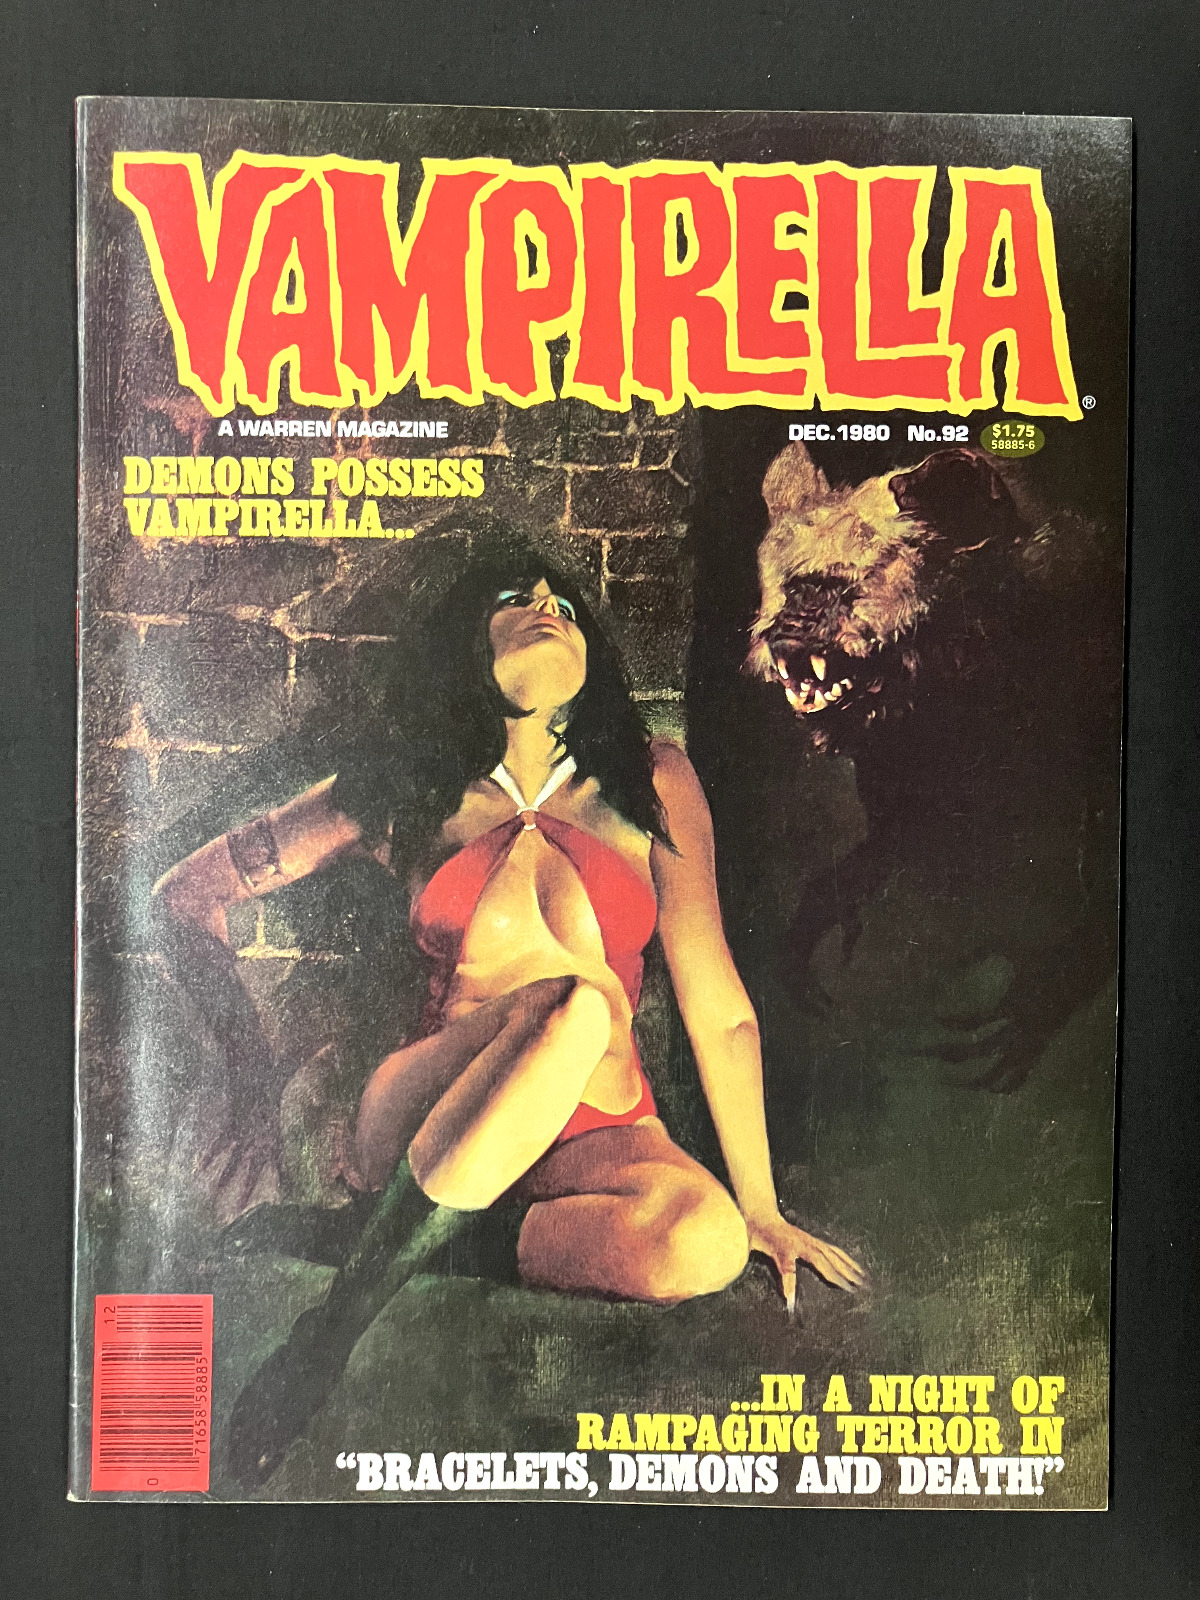 Vampirella #92 Warren Publishing Dec 1980